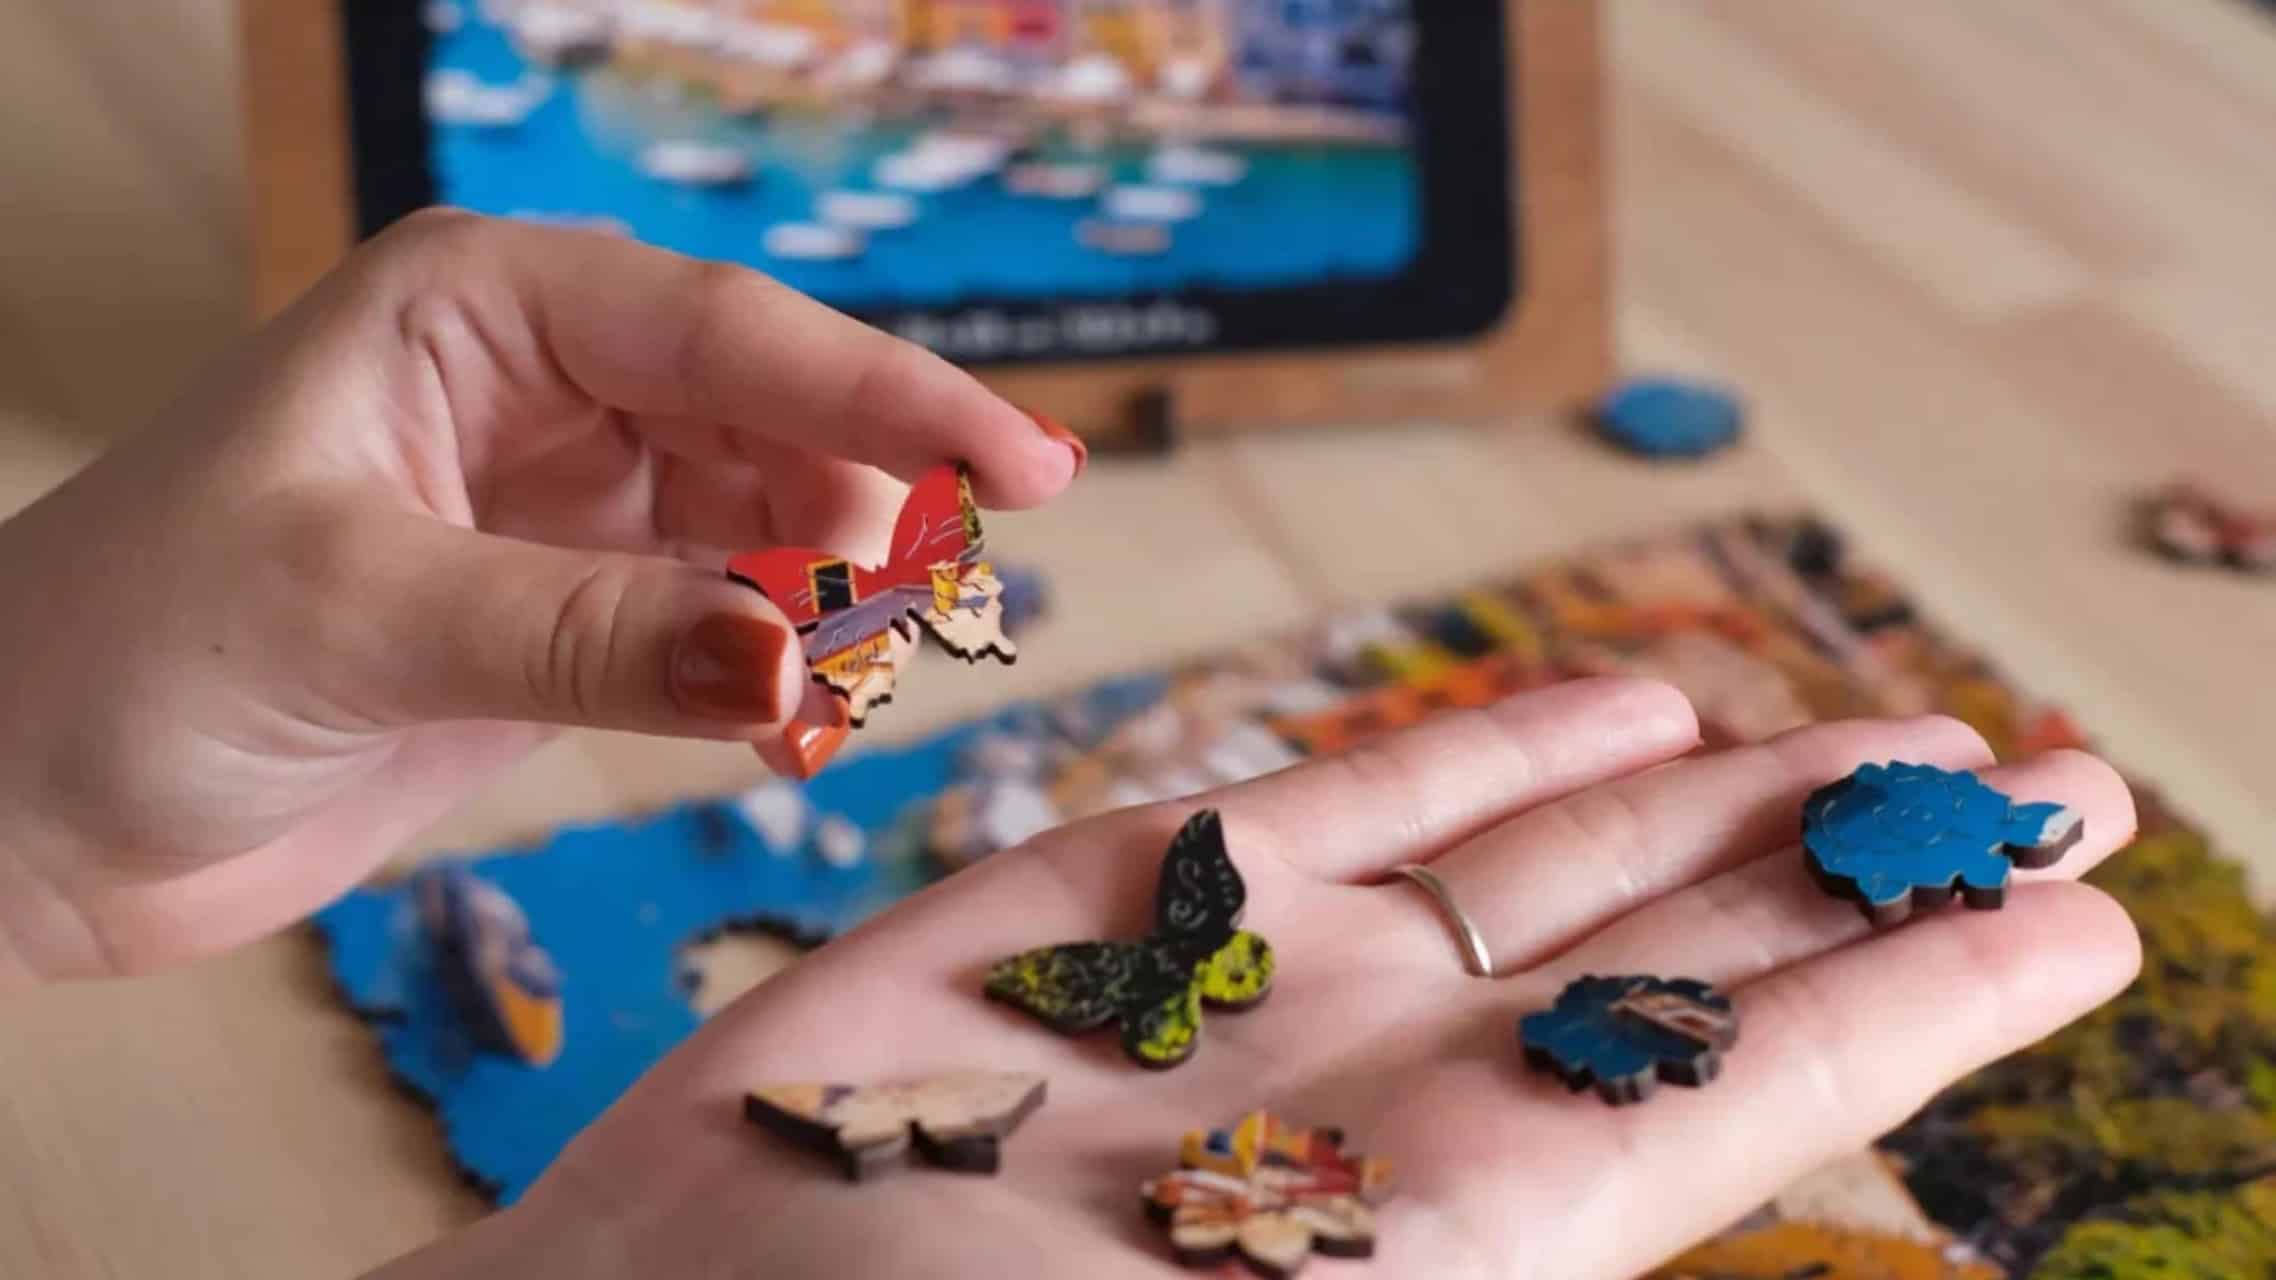 Mani che tengono i pezzi del puzzle sopra un tablet che mostra l'immagine del puzzle completato, con più pezzi sparsi su un tavolo di legno.